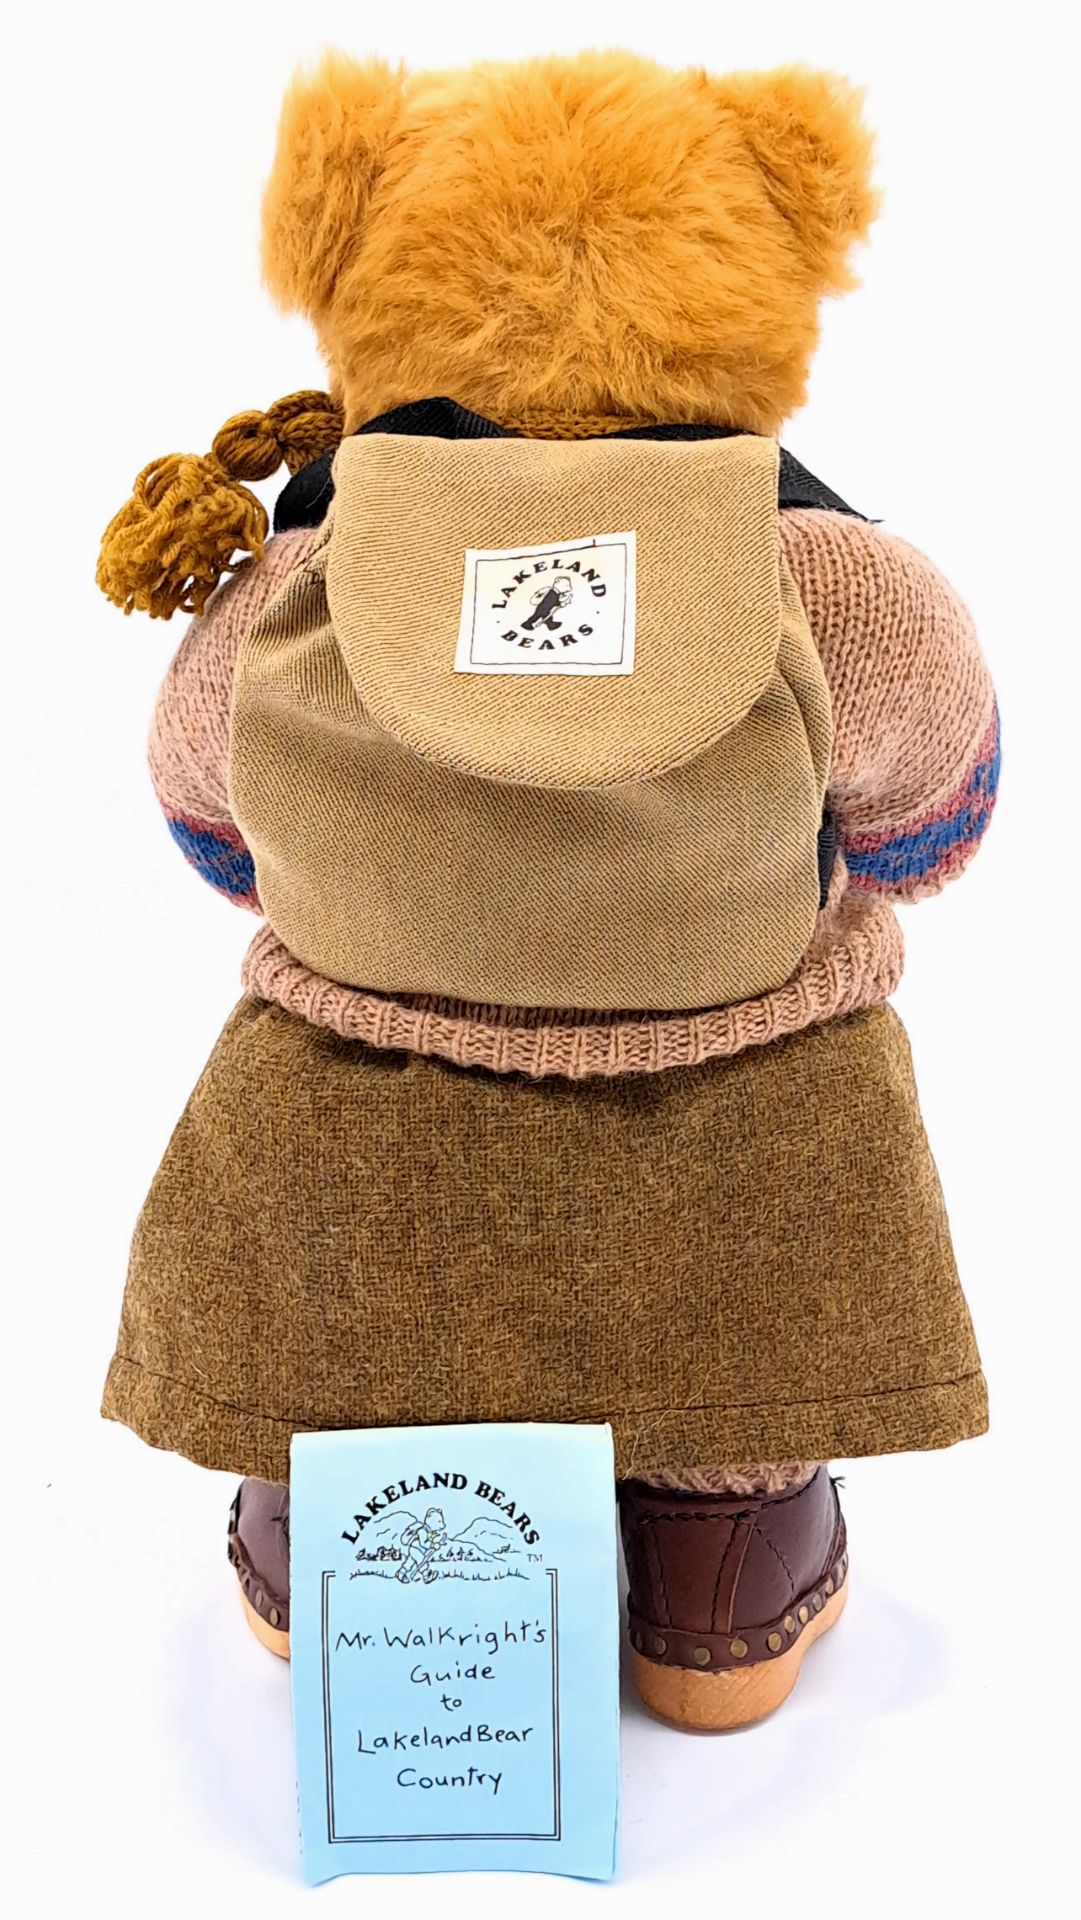 Dean's Rag Book (UK) Lakeland Bears vintage teddy bear - Image 2 of 2